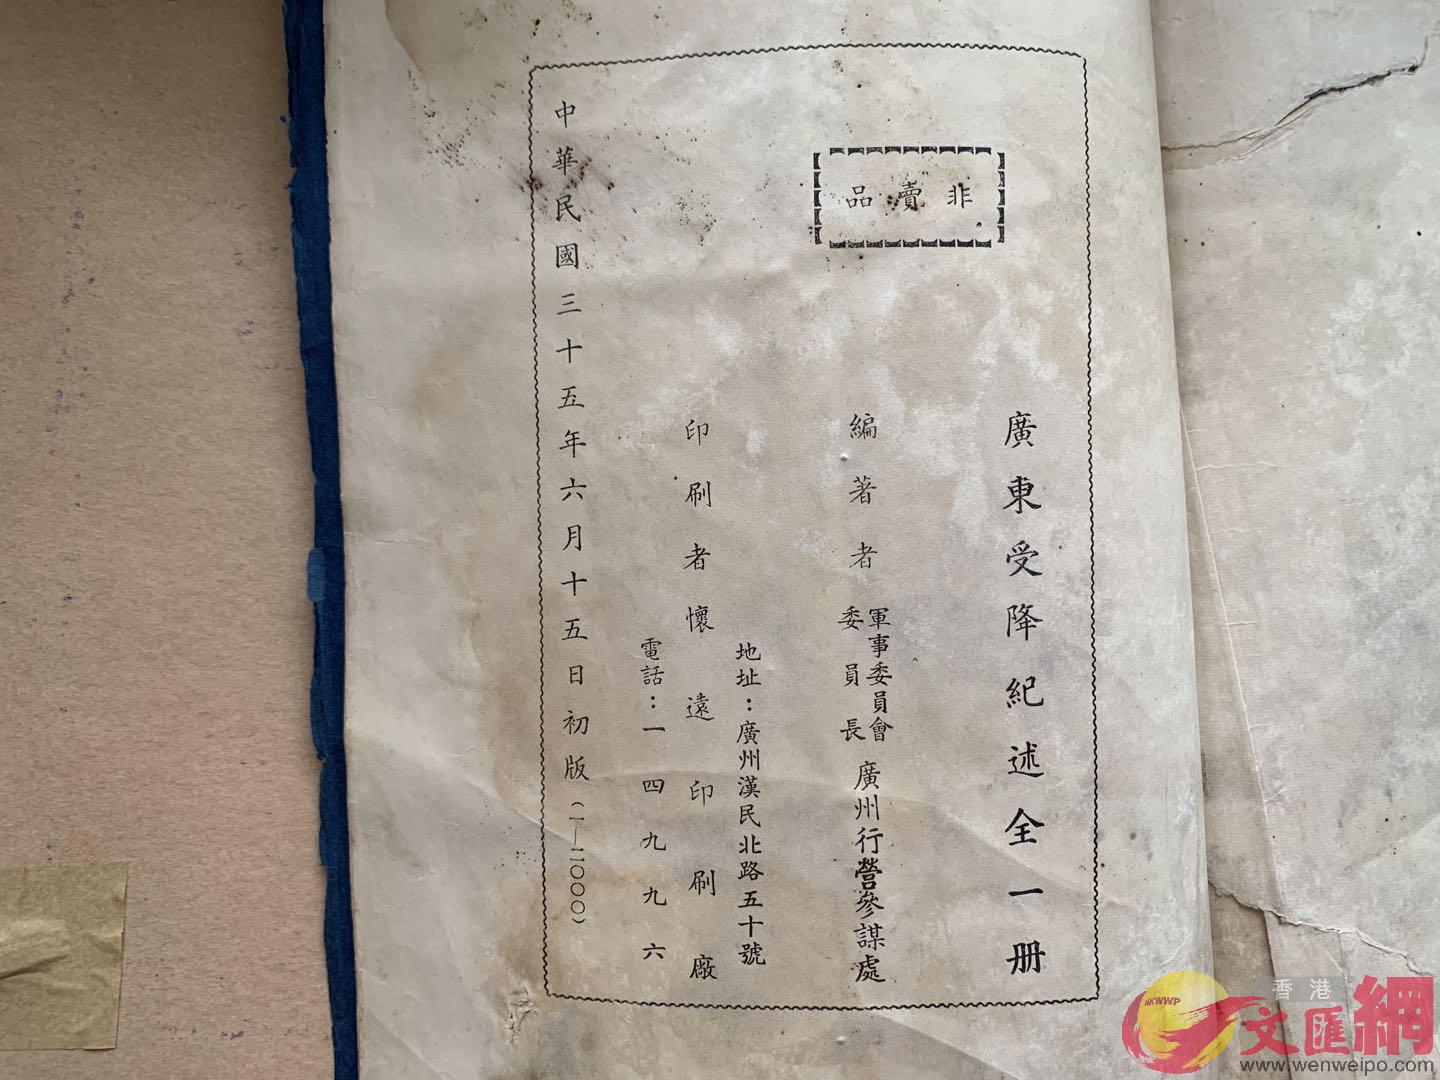 書中扉頁顯示A這份史料檔案是由國民政府軍委會委員長廣州行營參謀處編著A並出版於1946年6月A共發行2000冊C]香港文匯網記者 于珈琳 攝^ 